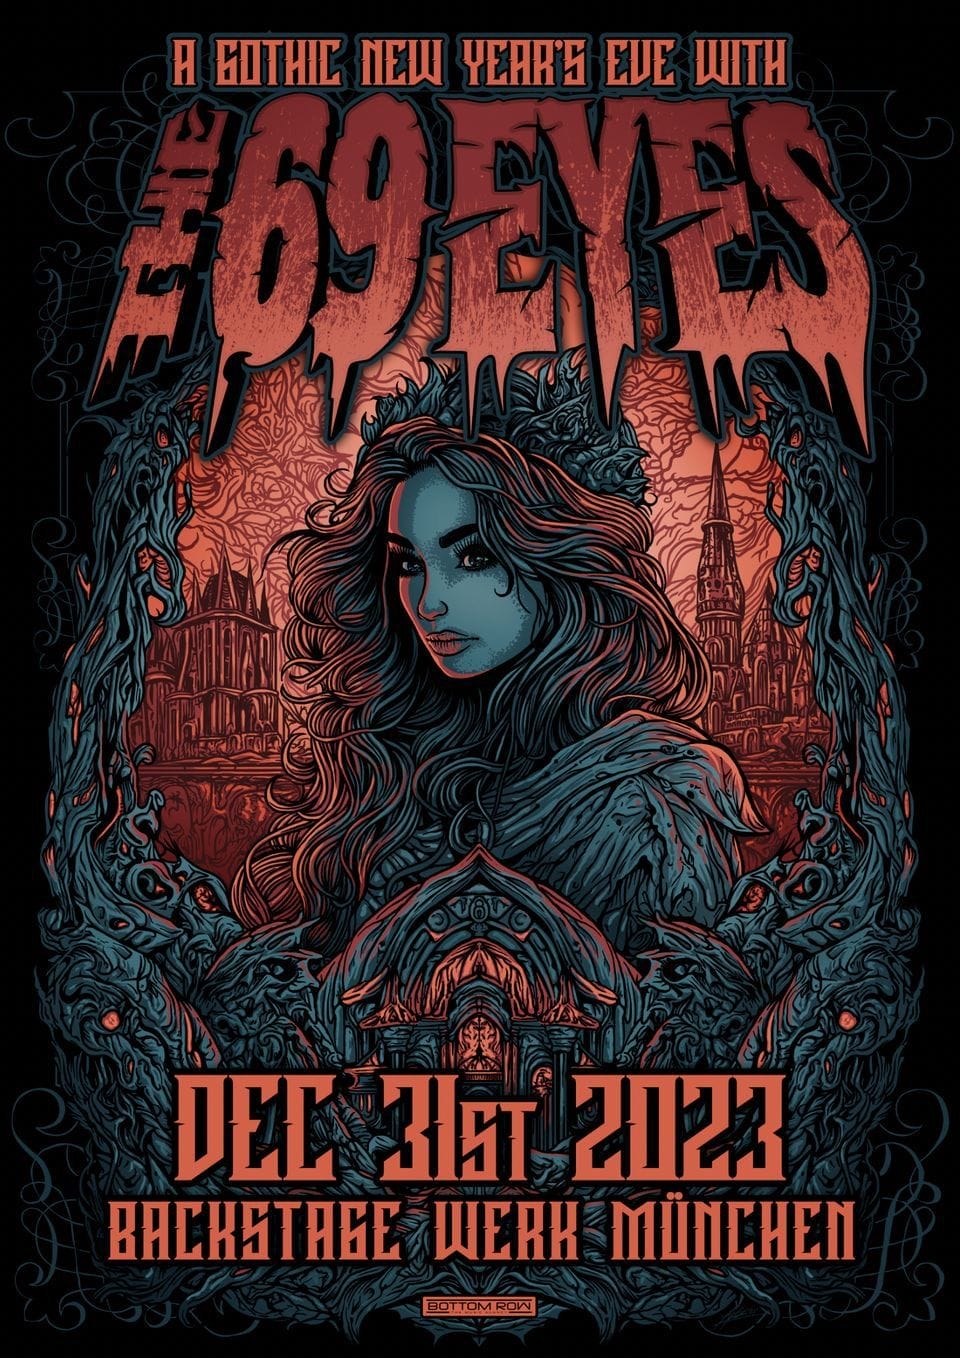 Das Poster für "A Gothic New Year's Eve" von The 69 Eyes